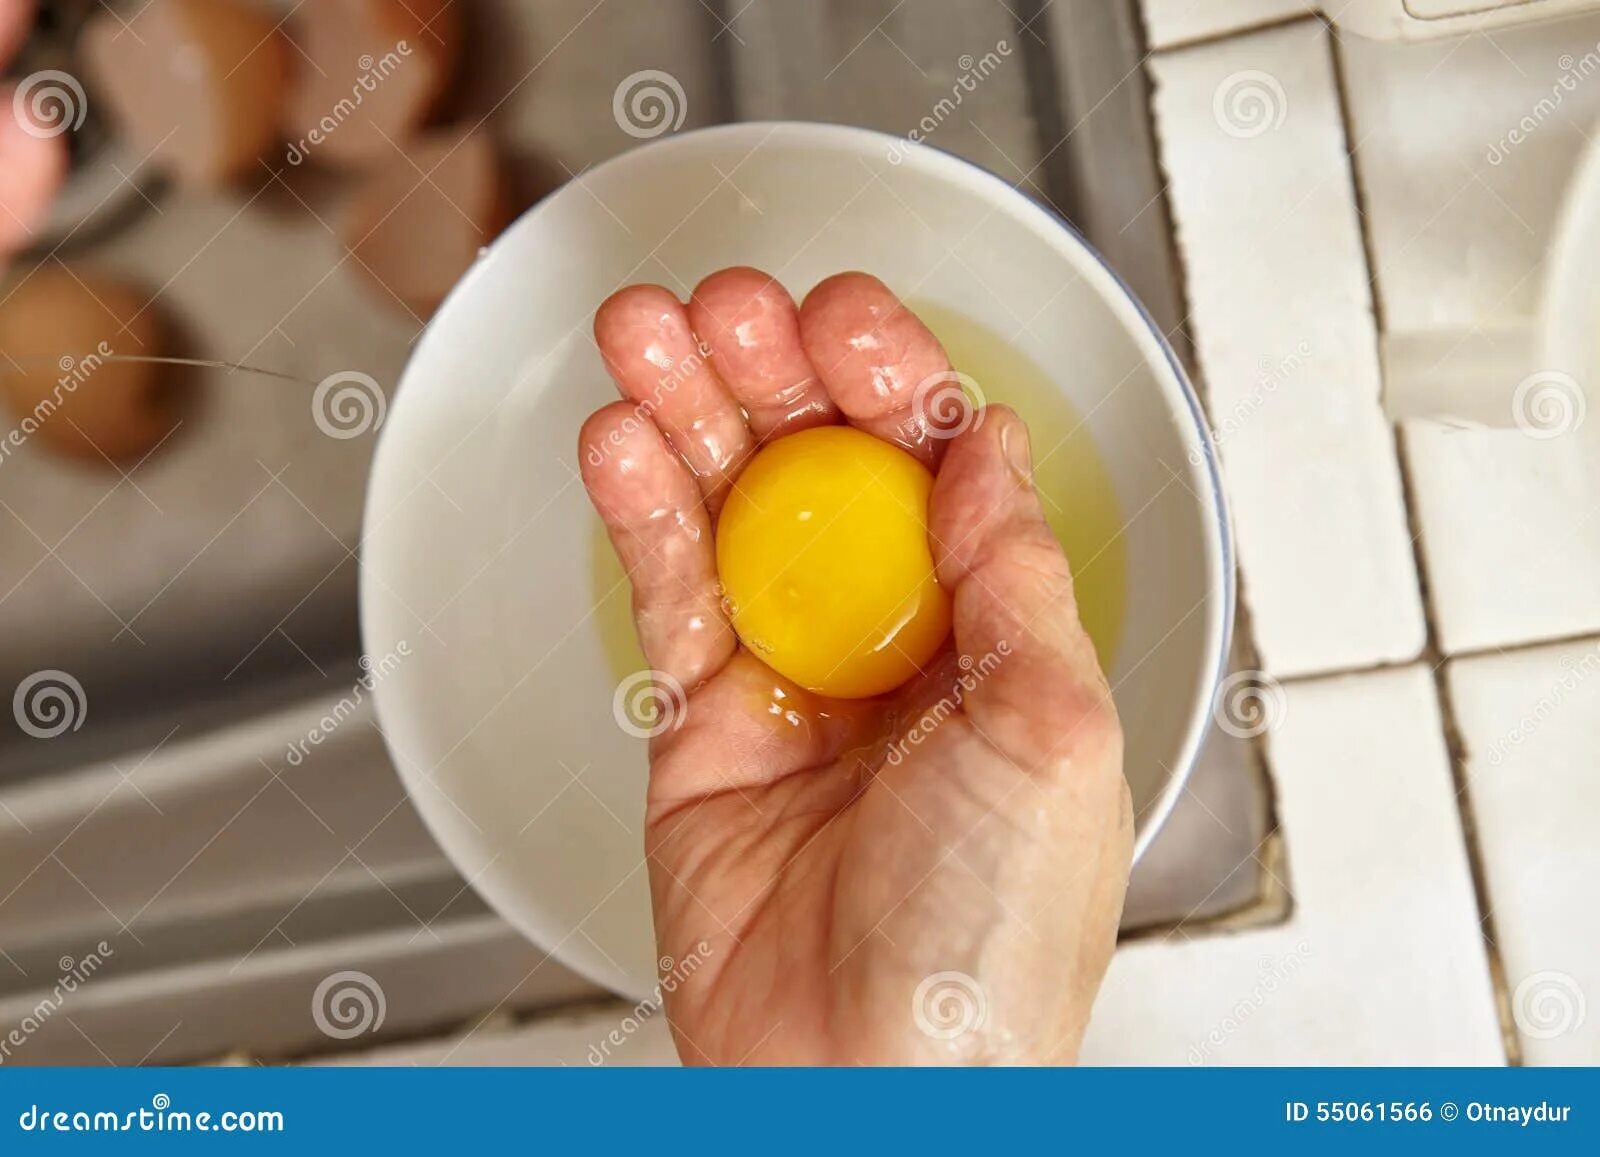 Сырое яйцо. Яйцо в руке. Яичный желток. Разбитое яйцо.